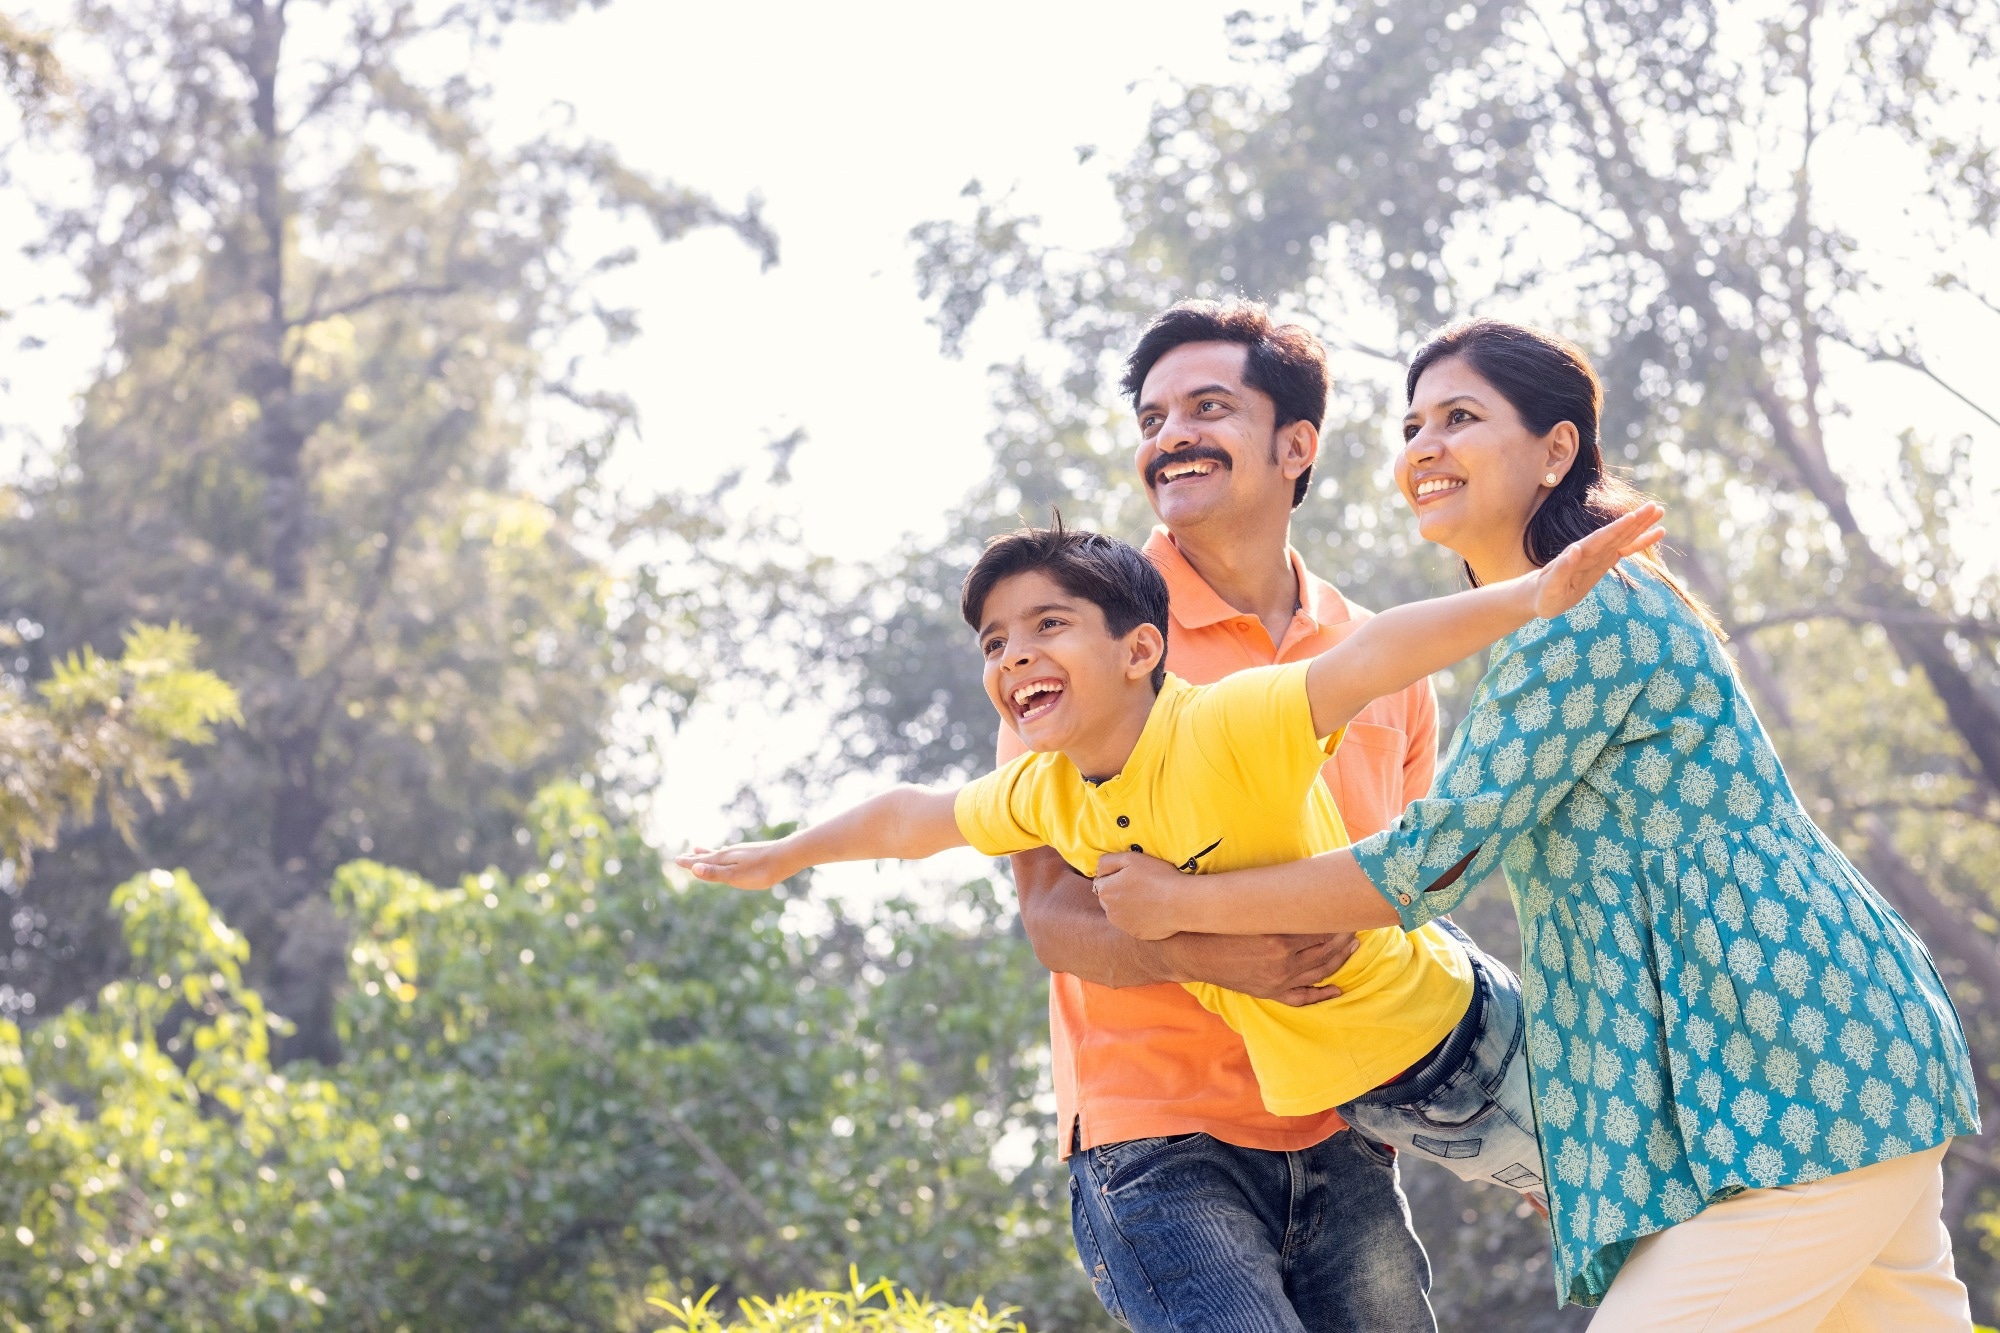 Étude : Les idéaux familiaux en période de faible fécondité.  Source de l’image : IndianFaces / Shutterstock